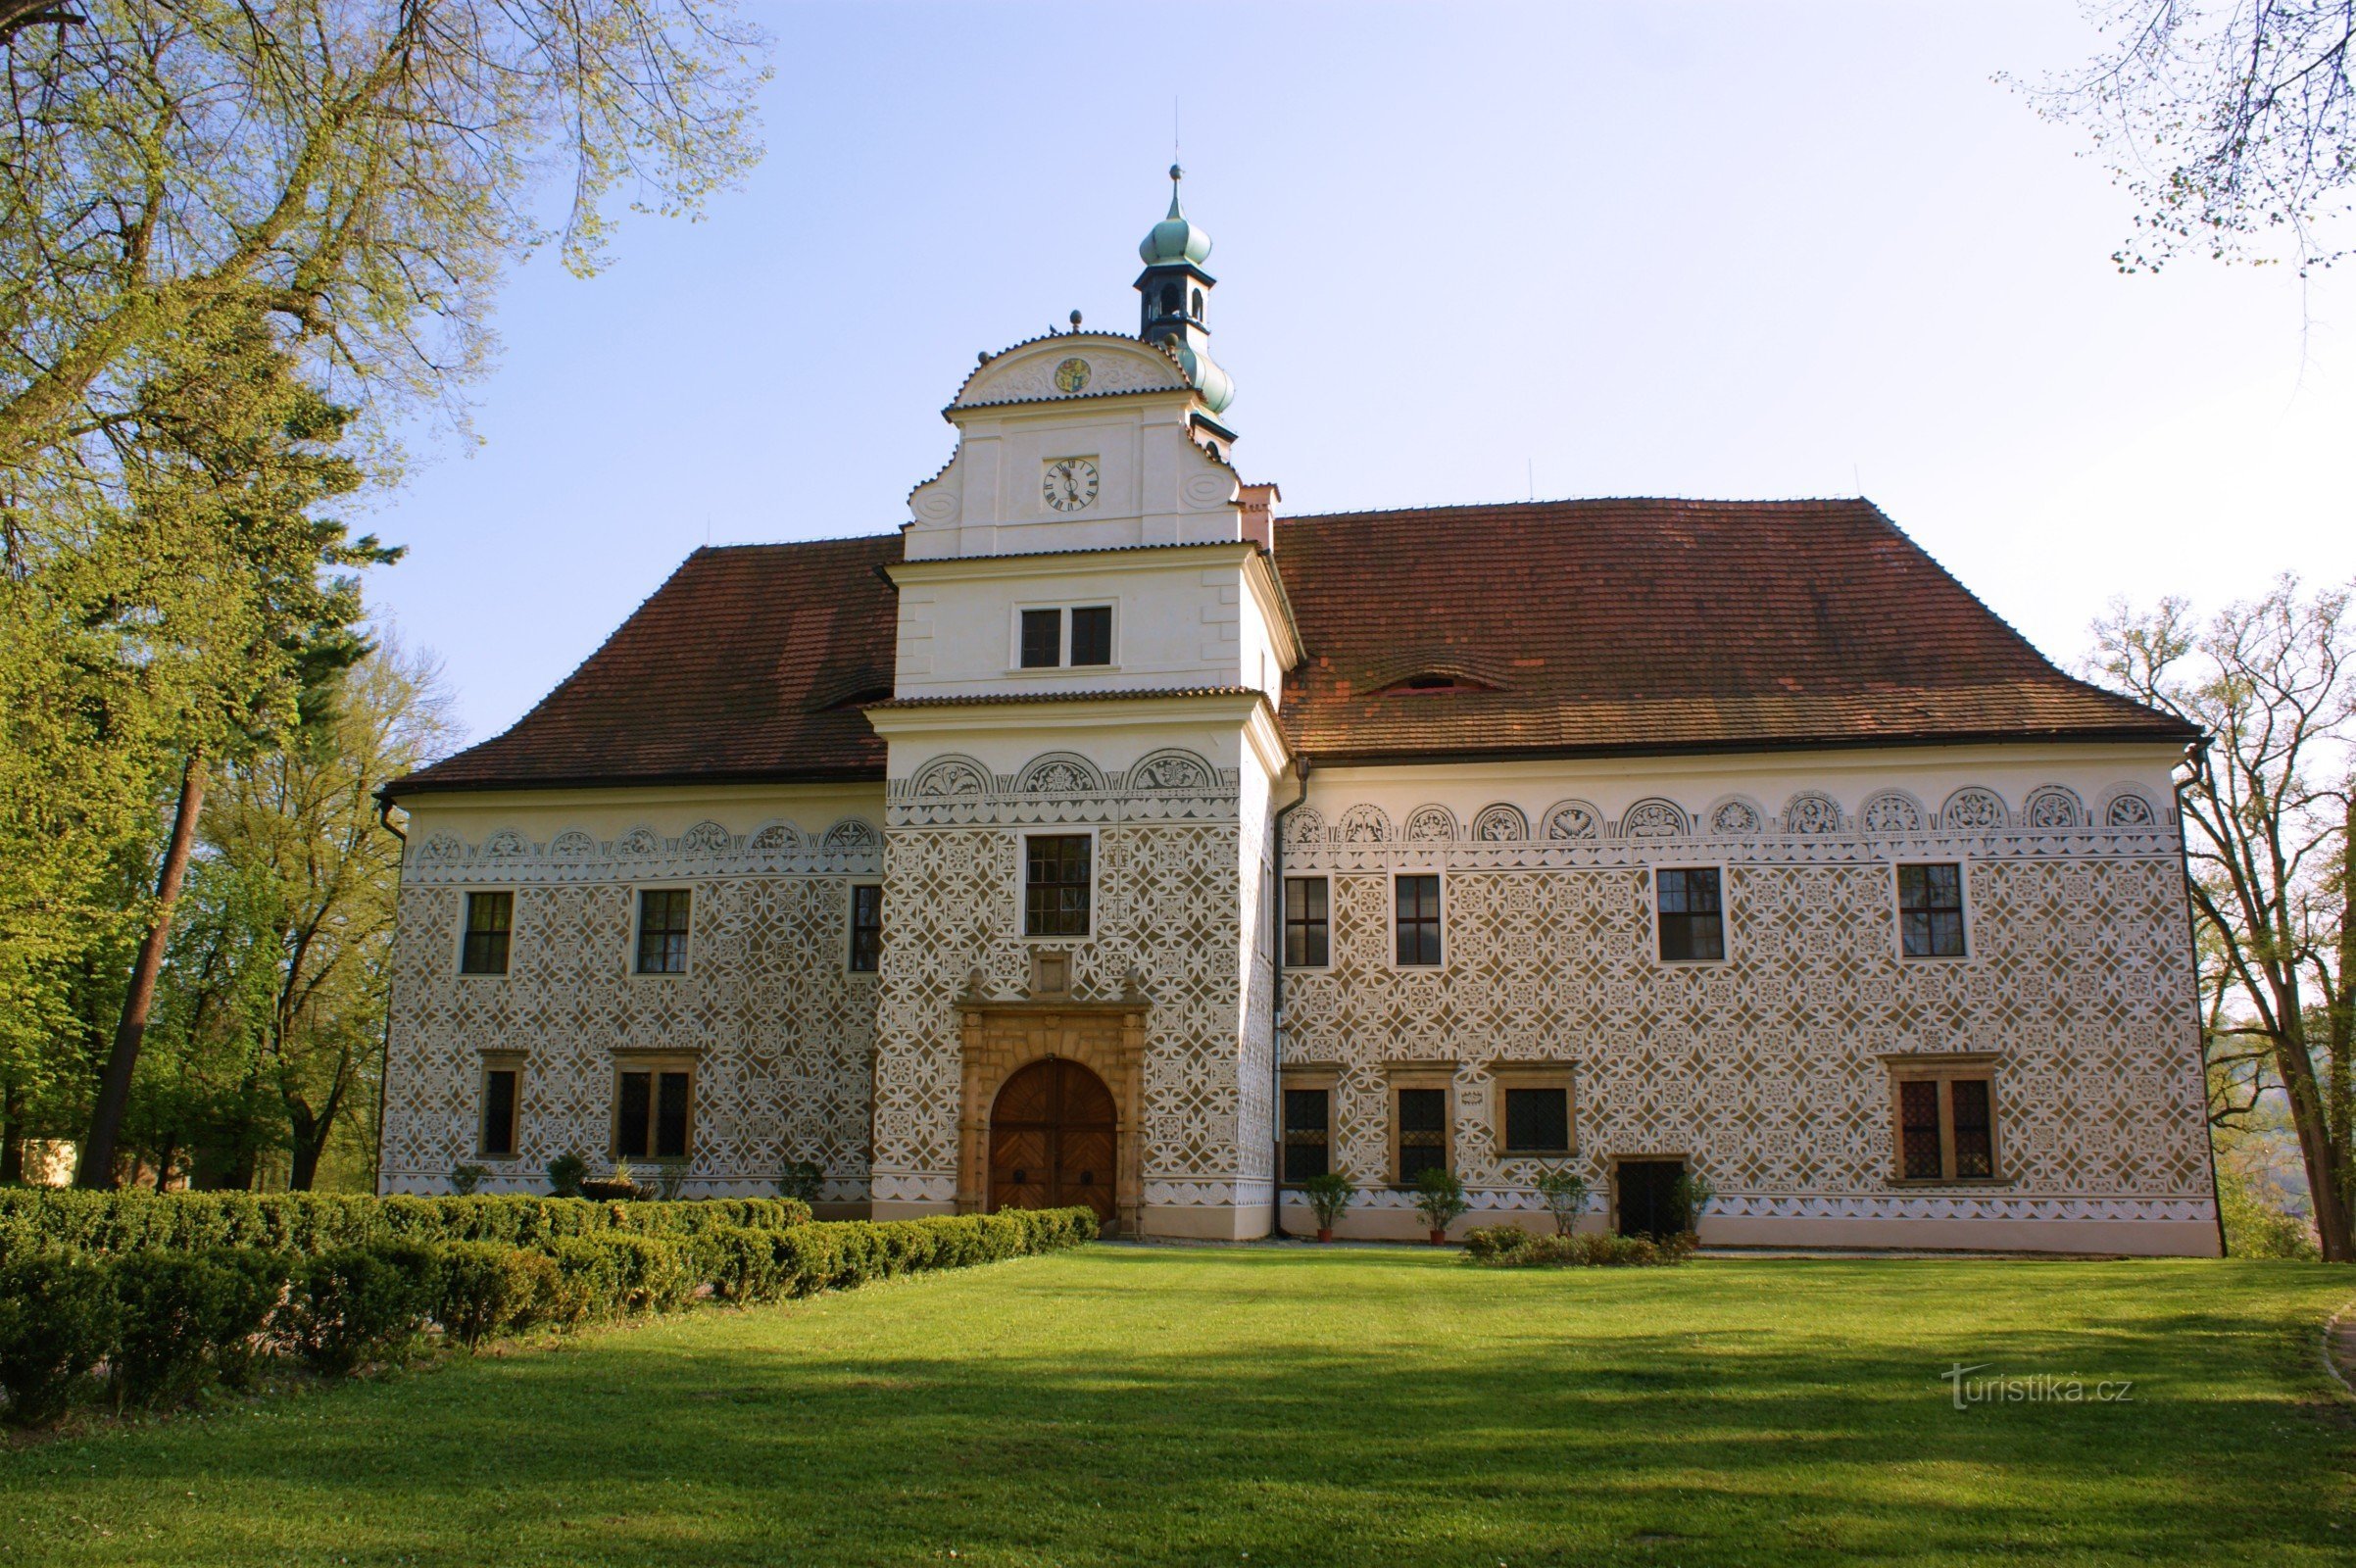 Lâu đài Doudleby nad Orlicí một viên ngọc quý của miền Đông Bohemia